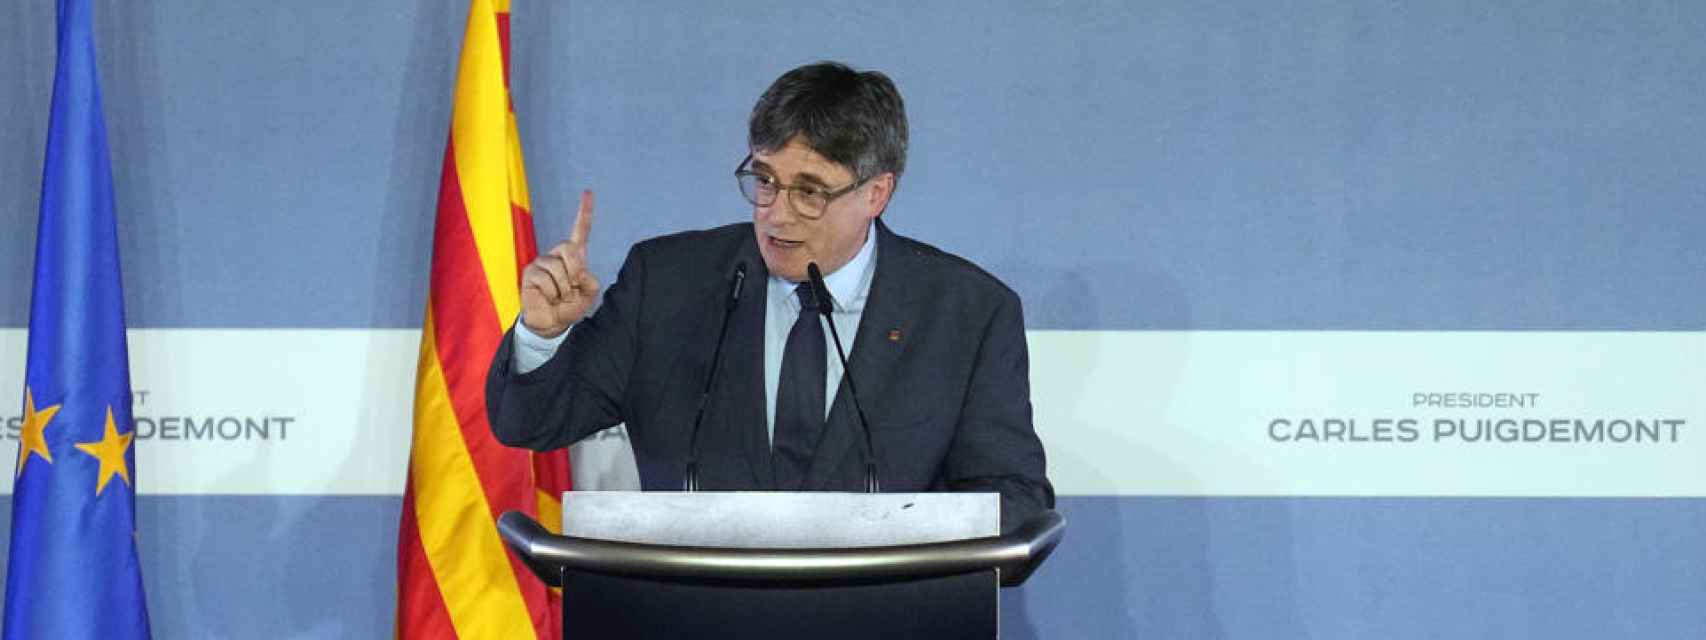 Puigdemont anuncia que será candidato a la presidencia de Cataluña en el 12-M